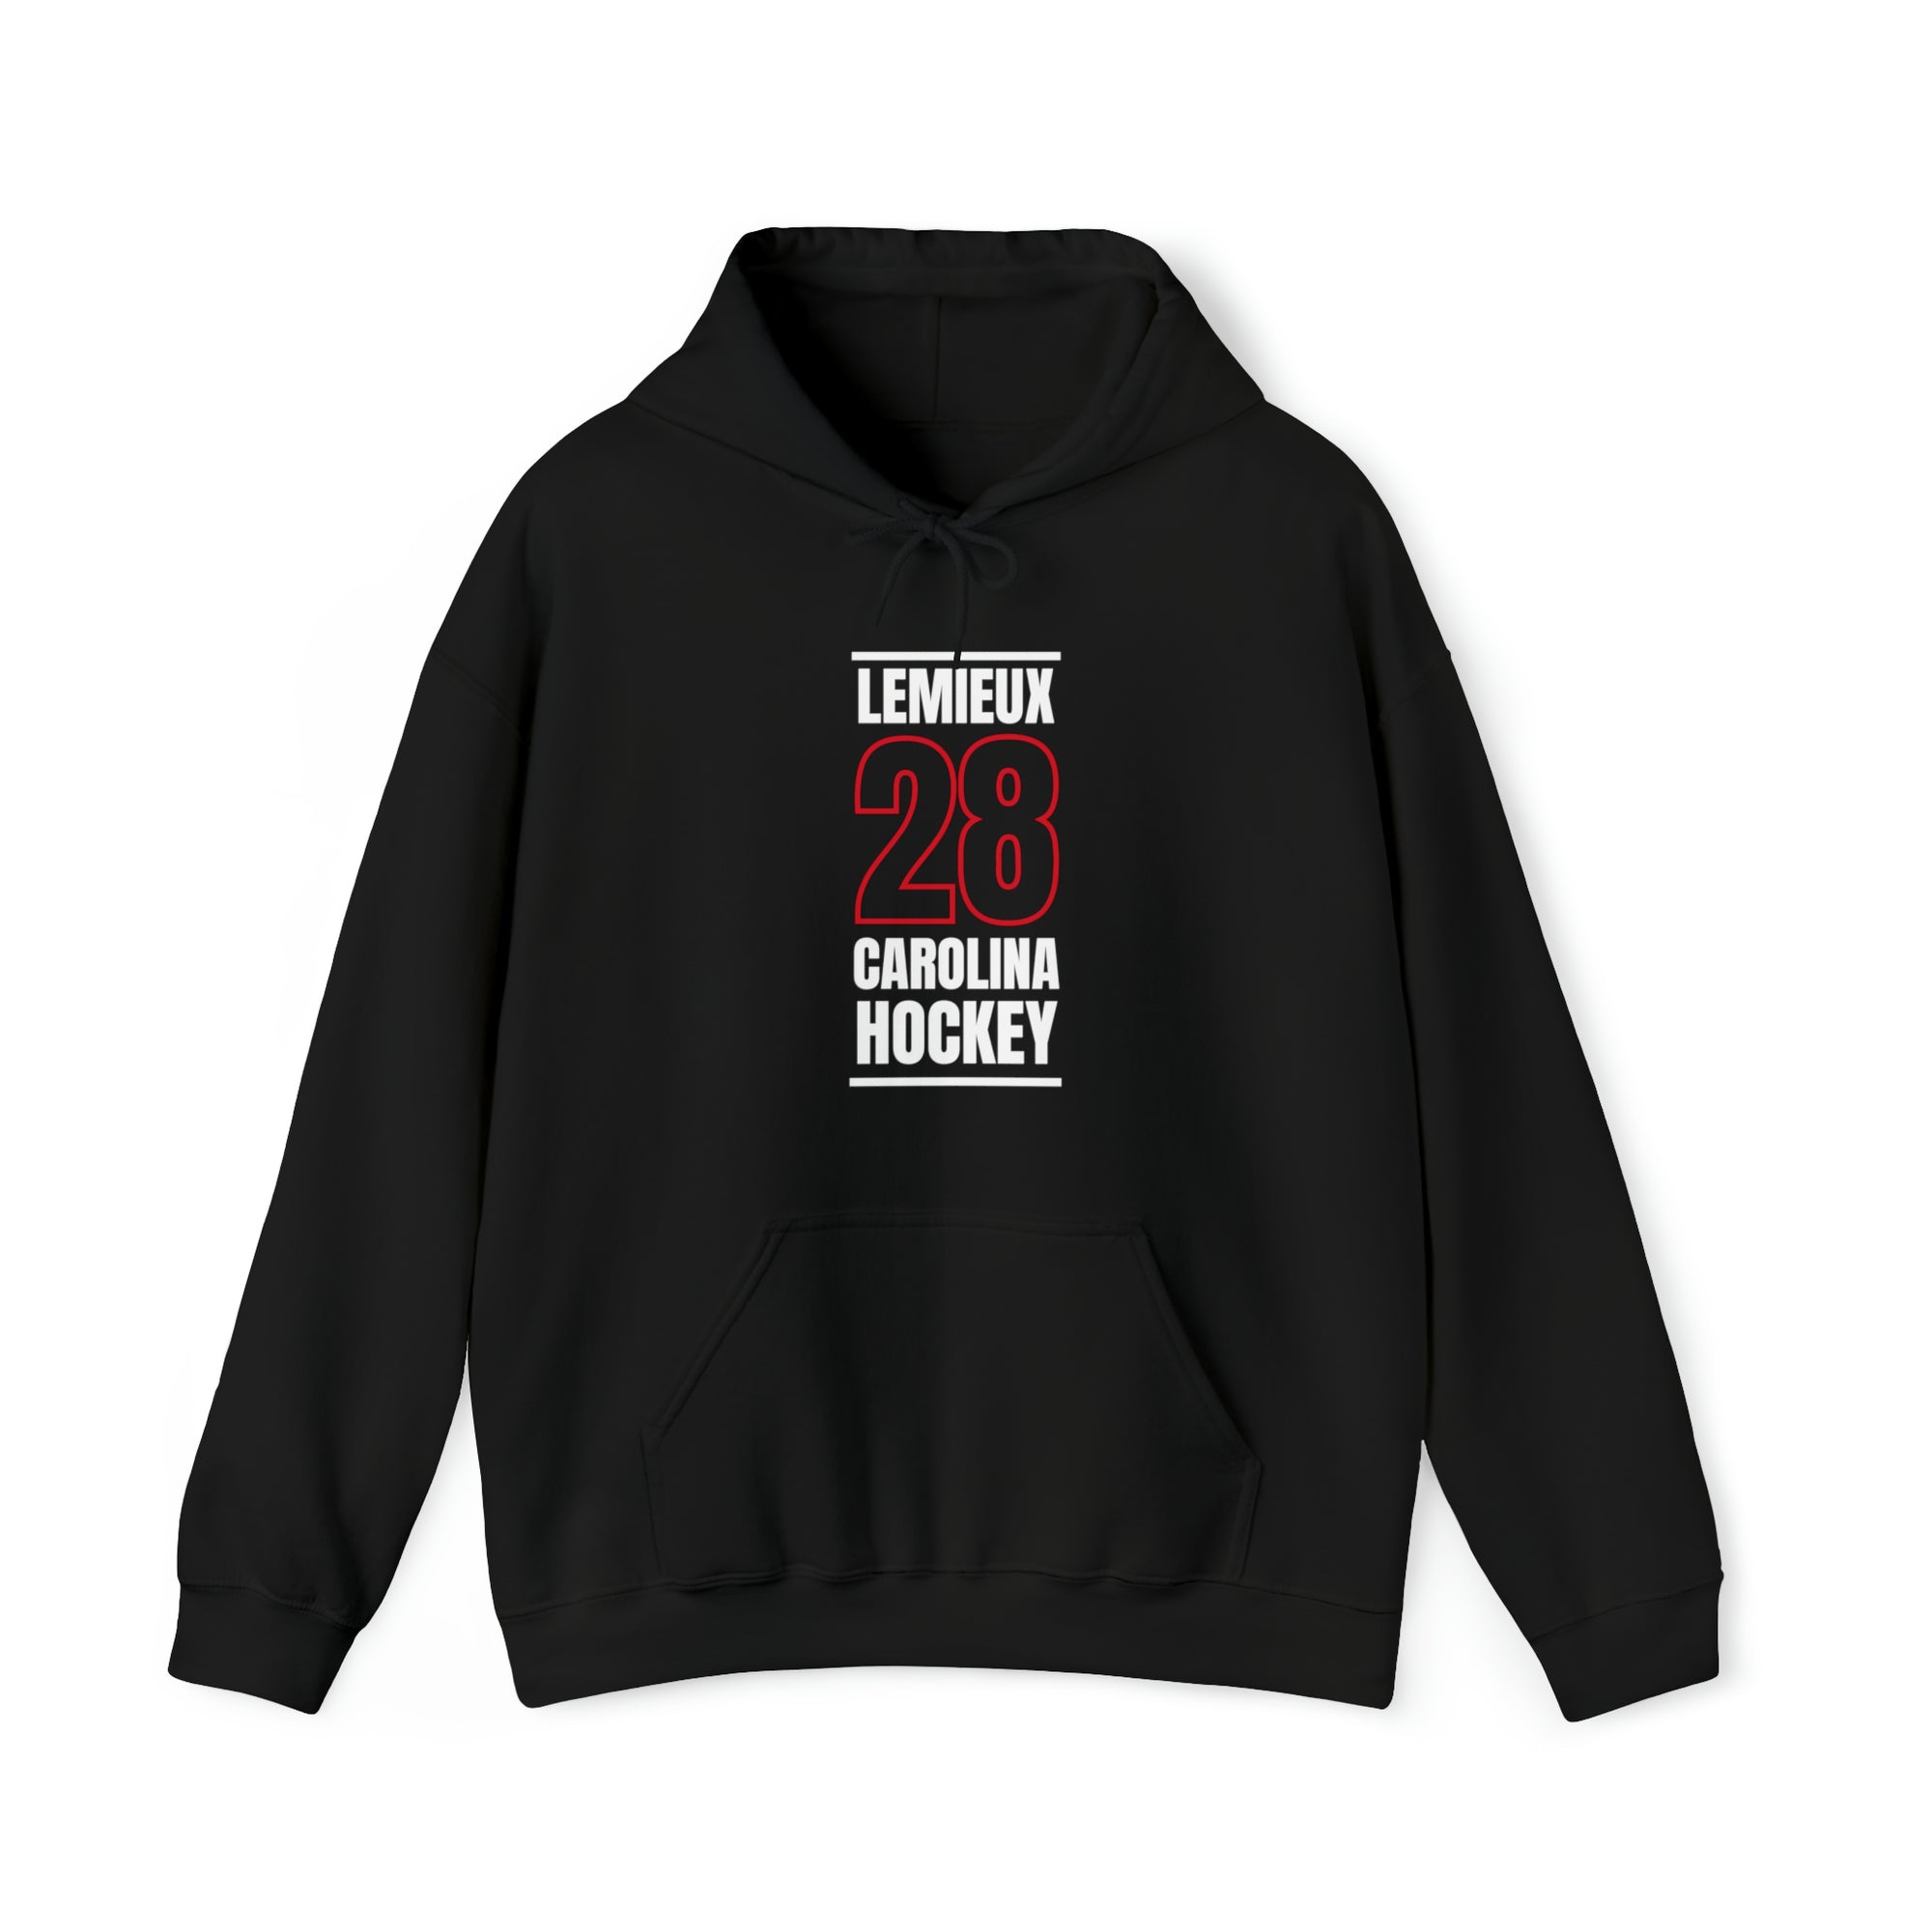 Lemieux 28 Carolina Hockey Black Vertical Design Unisex Hooded Sweatshirt